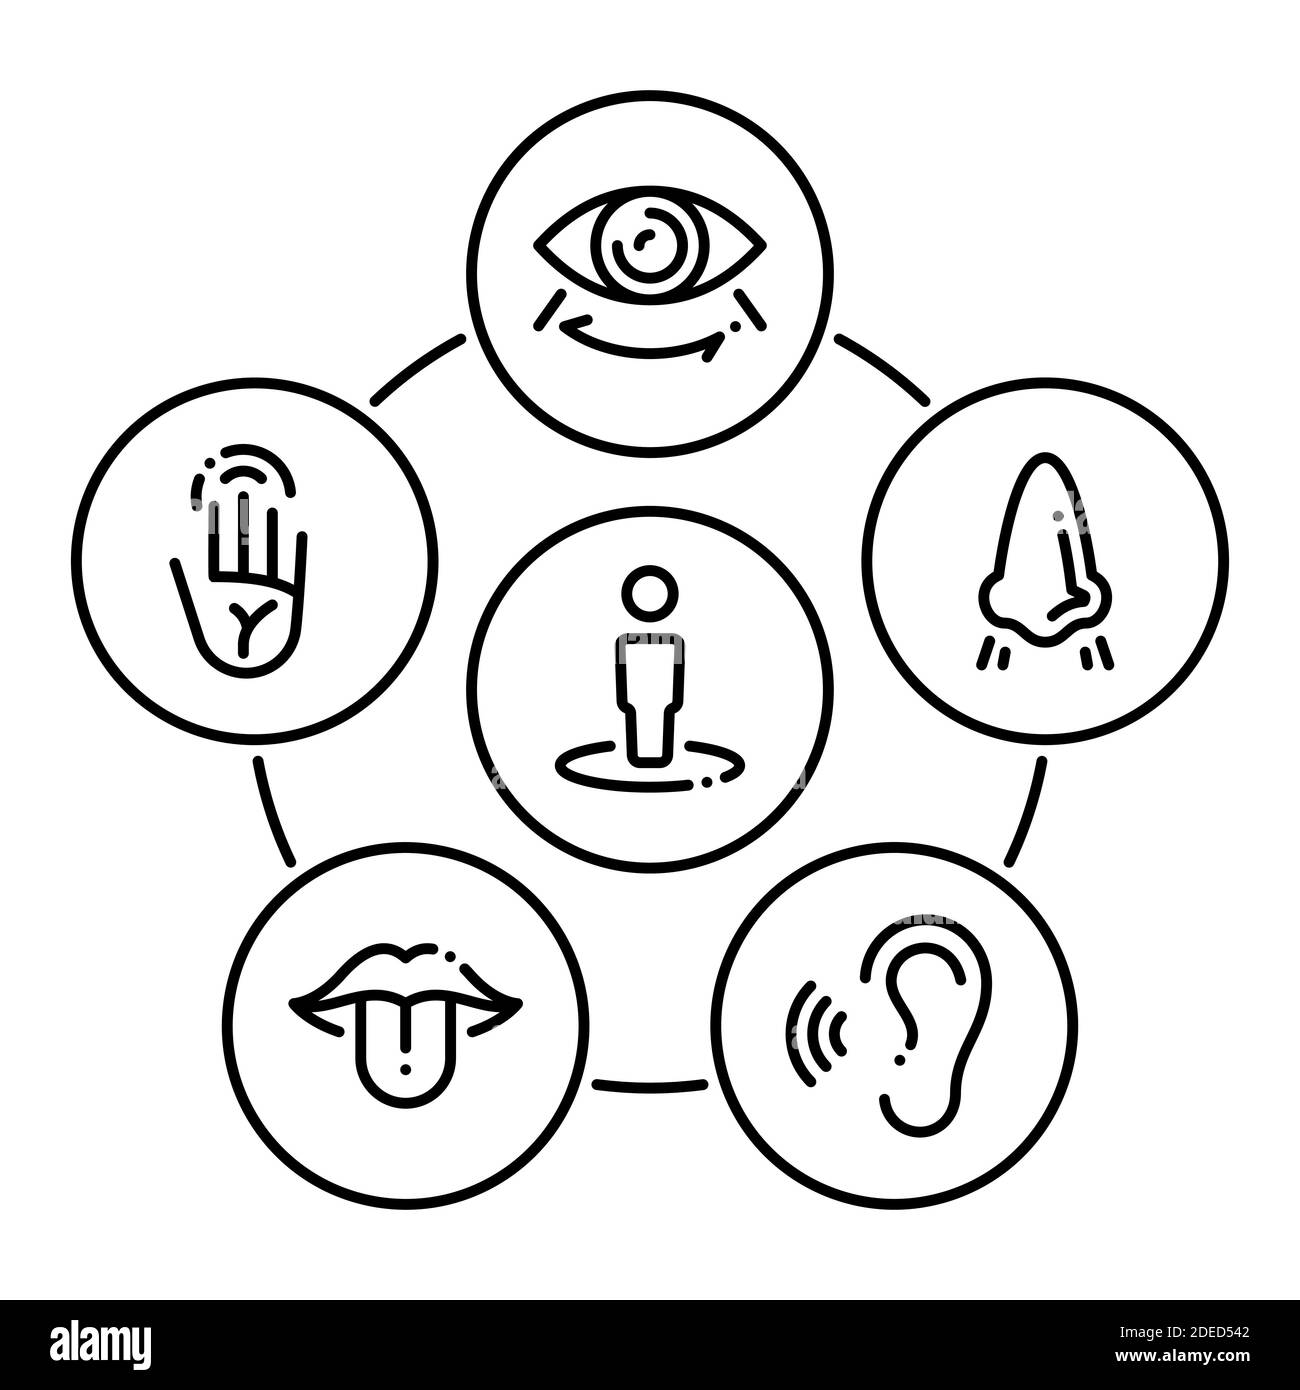 Ensemble d'icônes noires isolées sur fond blanc, sur le thème organes de sens Illustration de Vecteur